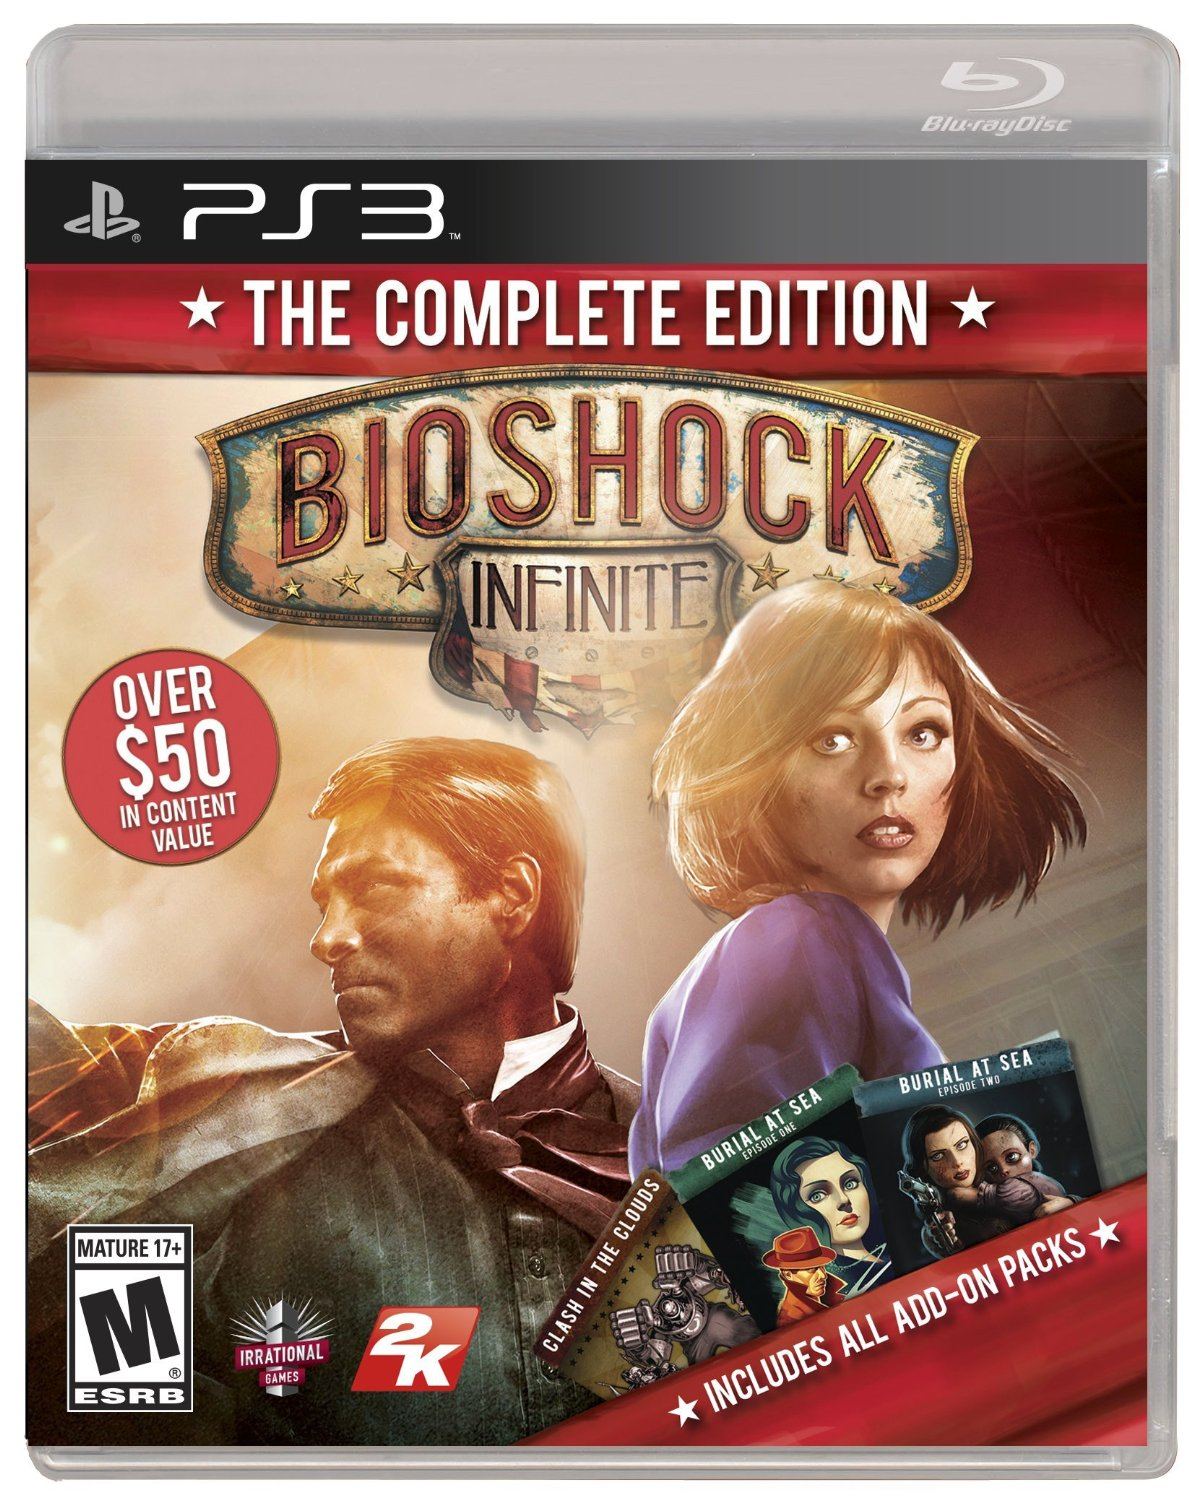 Bioshock Infinite Launch Trailer 